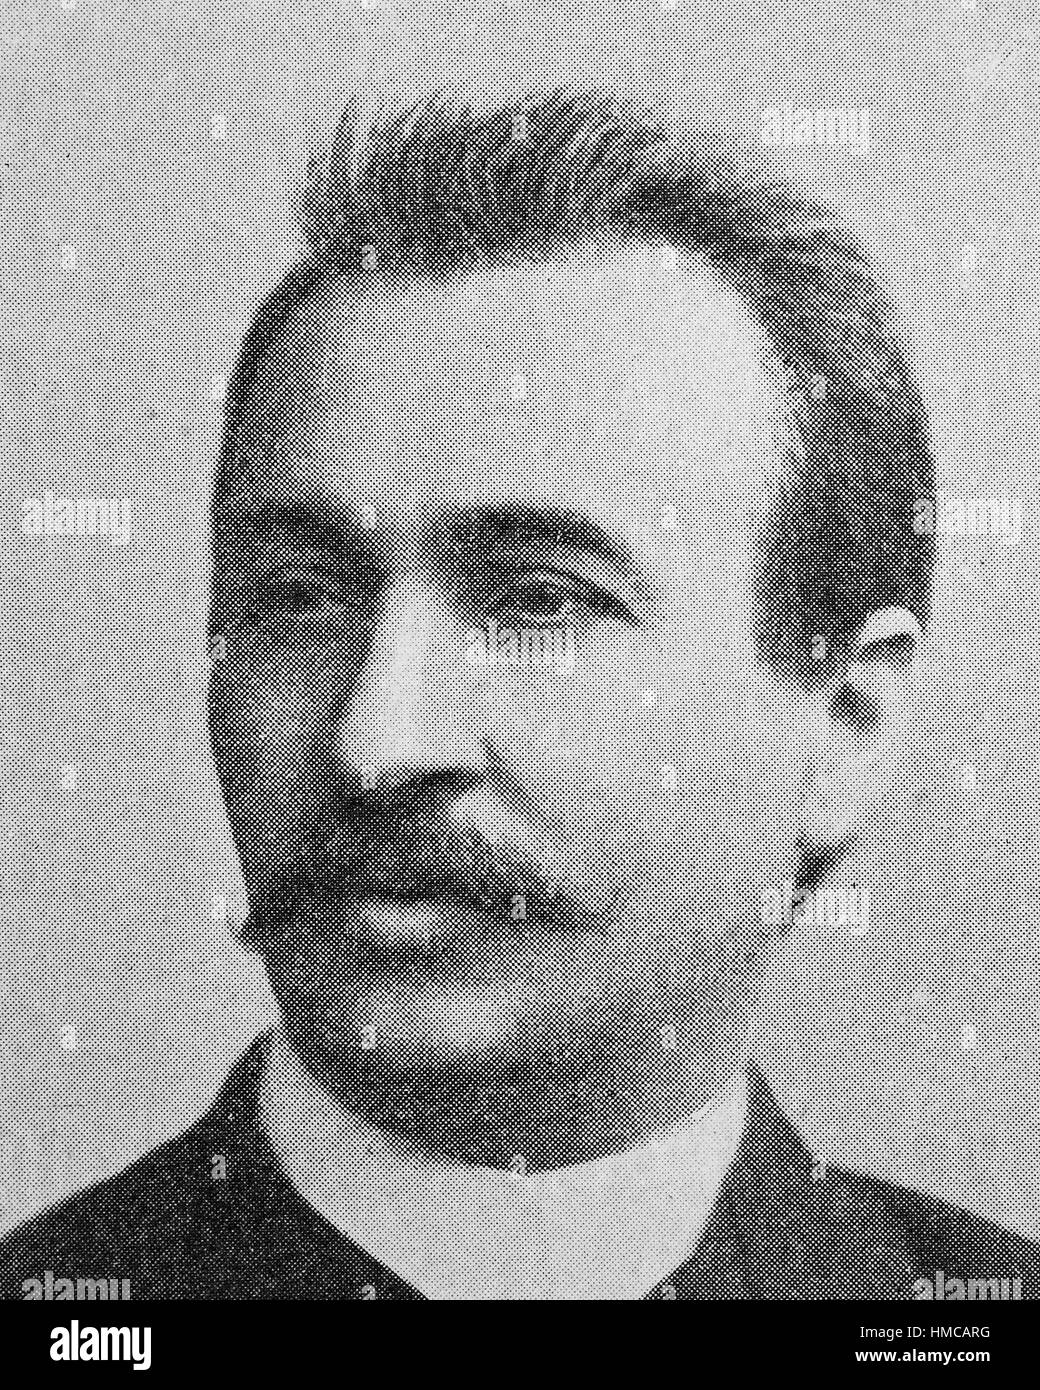 Hermann Suchier, 1848-1914, German novelist., photo or illustration, published 1892, digital improved Stock Photo